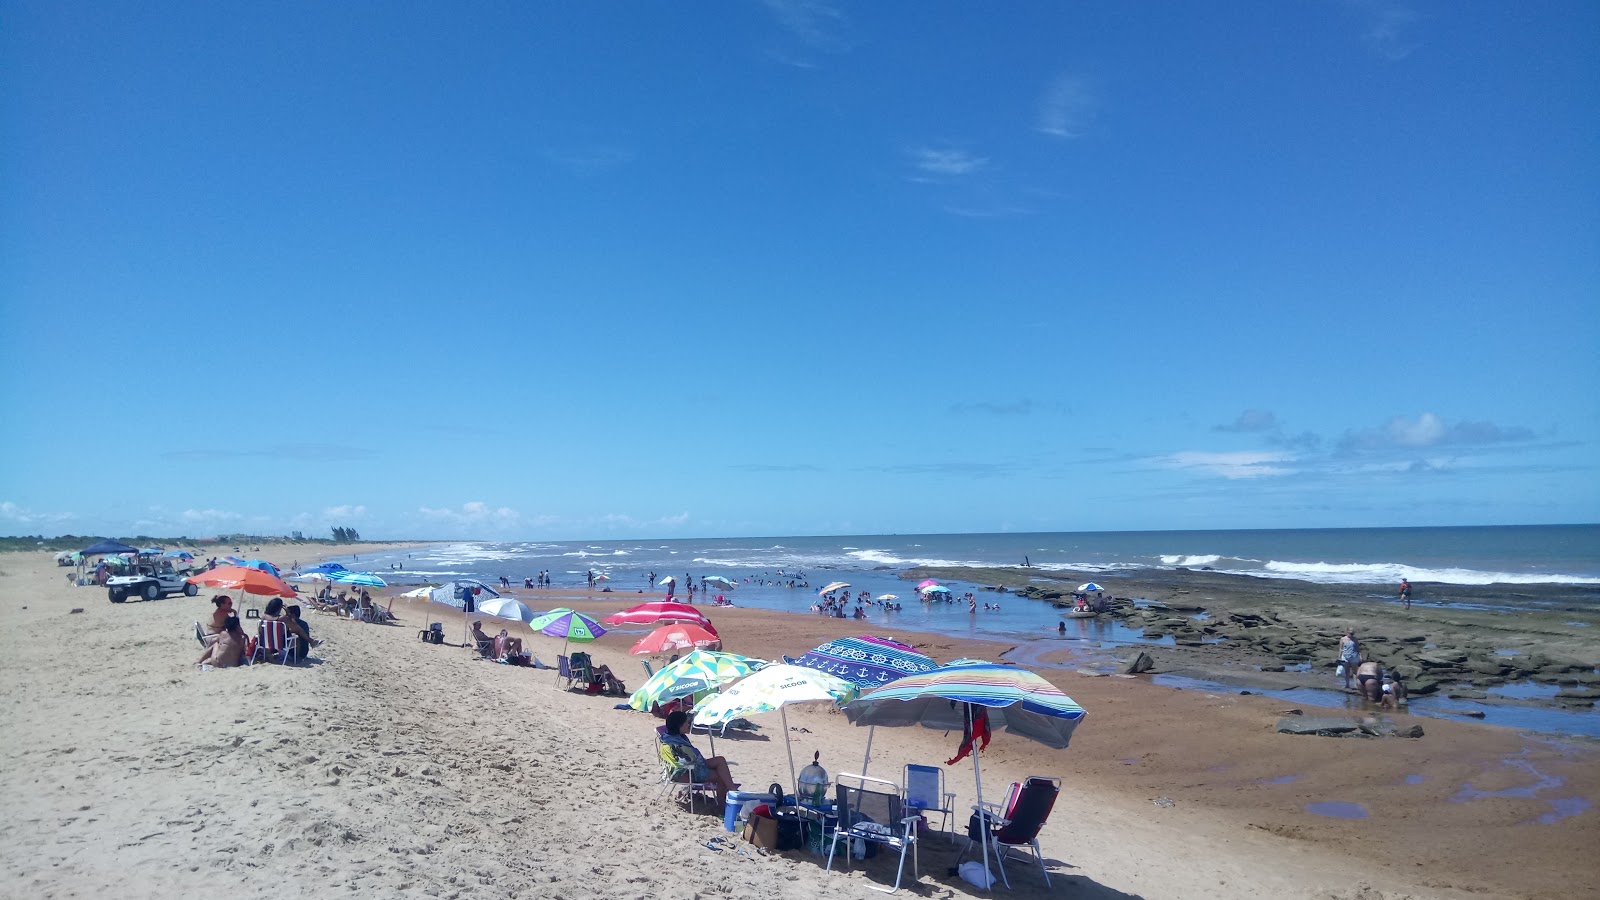 乌鲁苏夸拉海滩的照片 - 受到放松专家欢迎的热门地点